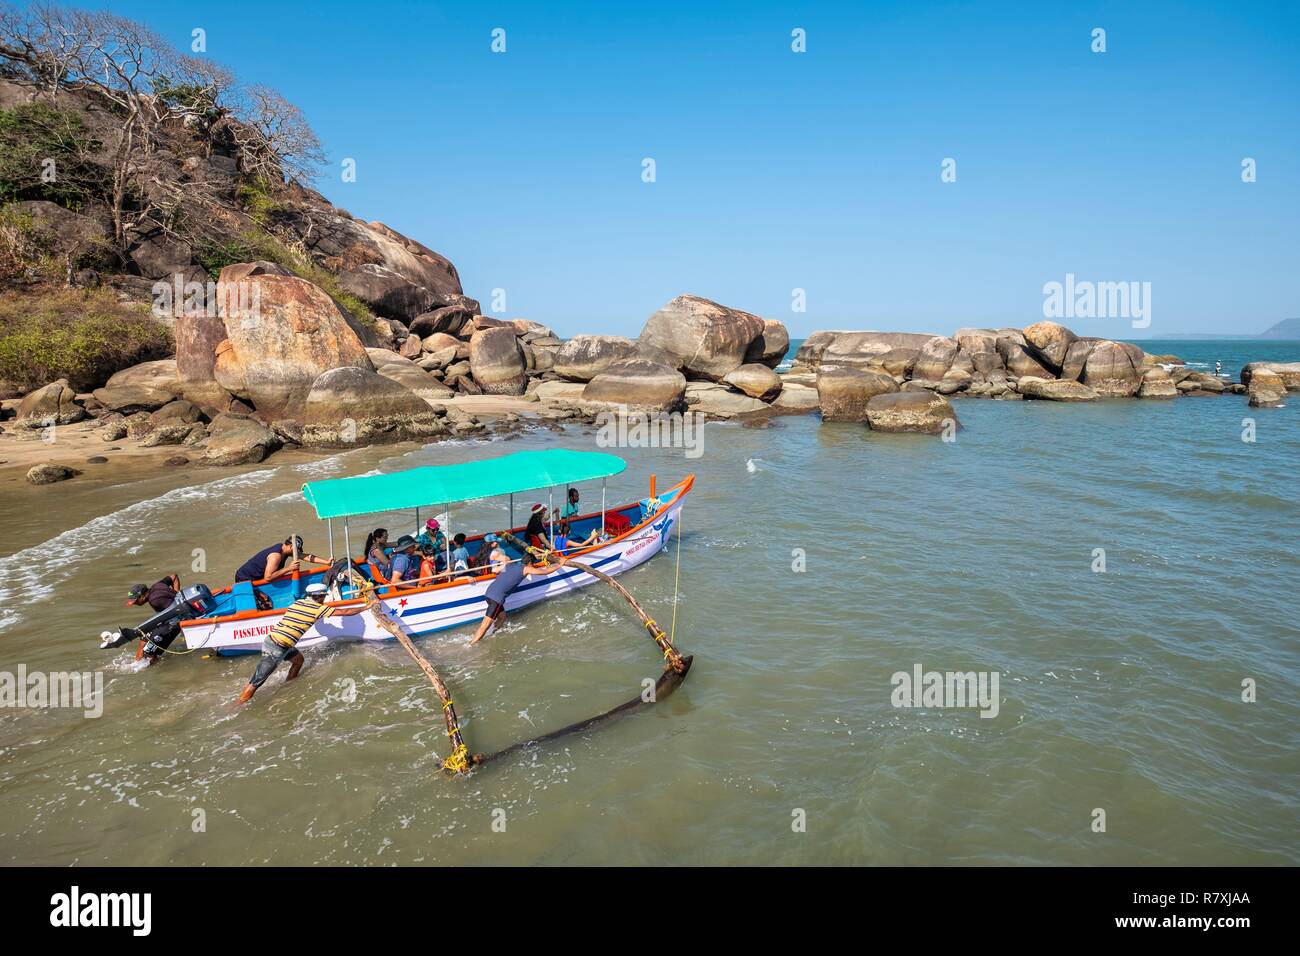 L'Inde, Goa, touristes, d'Agonda de partir pour un voyage en bateau Banque D'Images